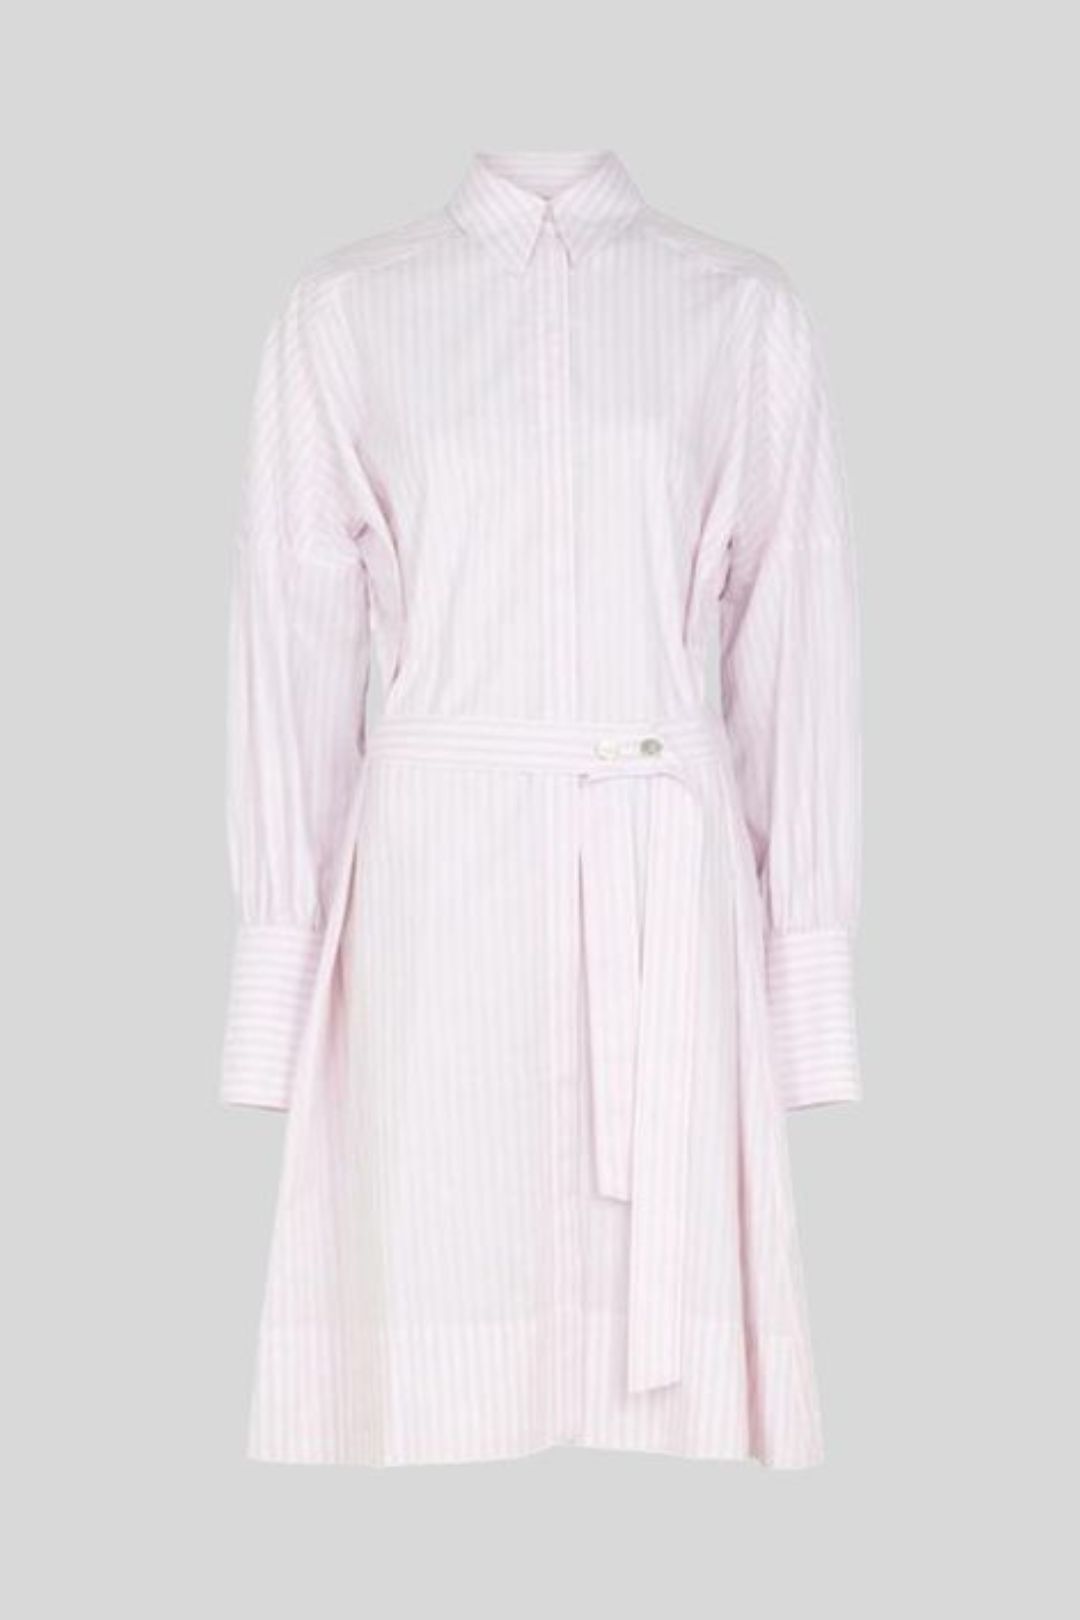 Victoria Beckham - Striped Belted Shirt Dress